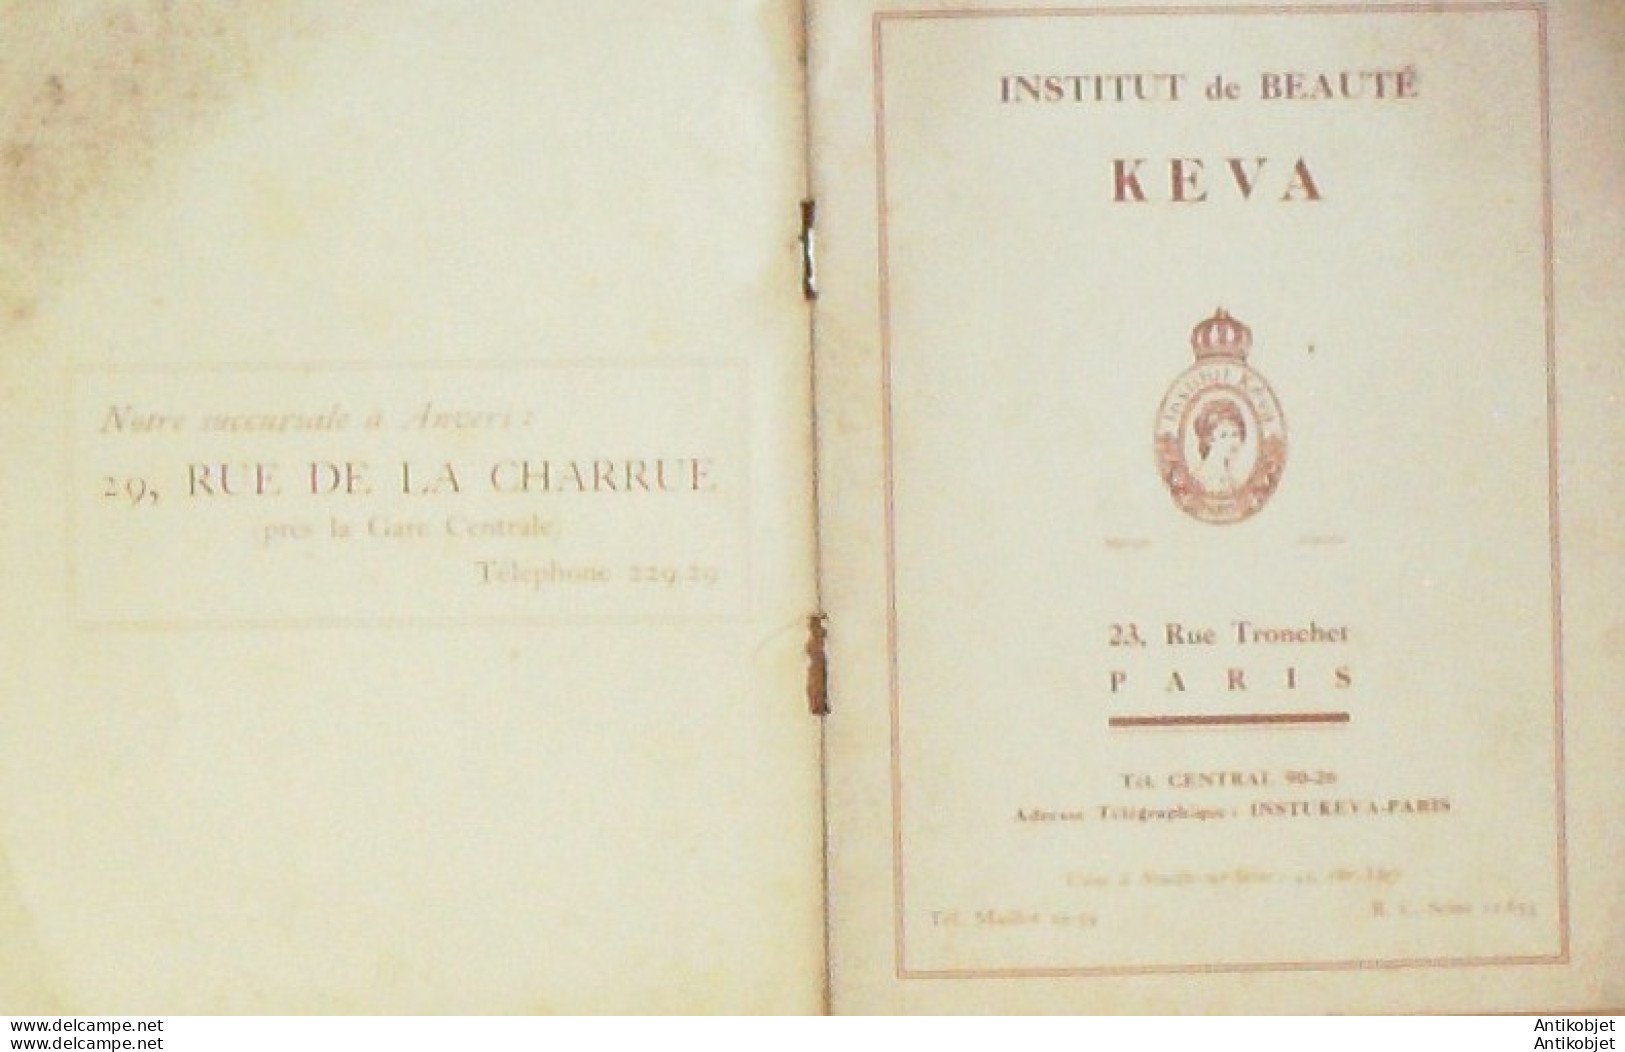 KEVA (Institut de Beauté) 1930